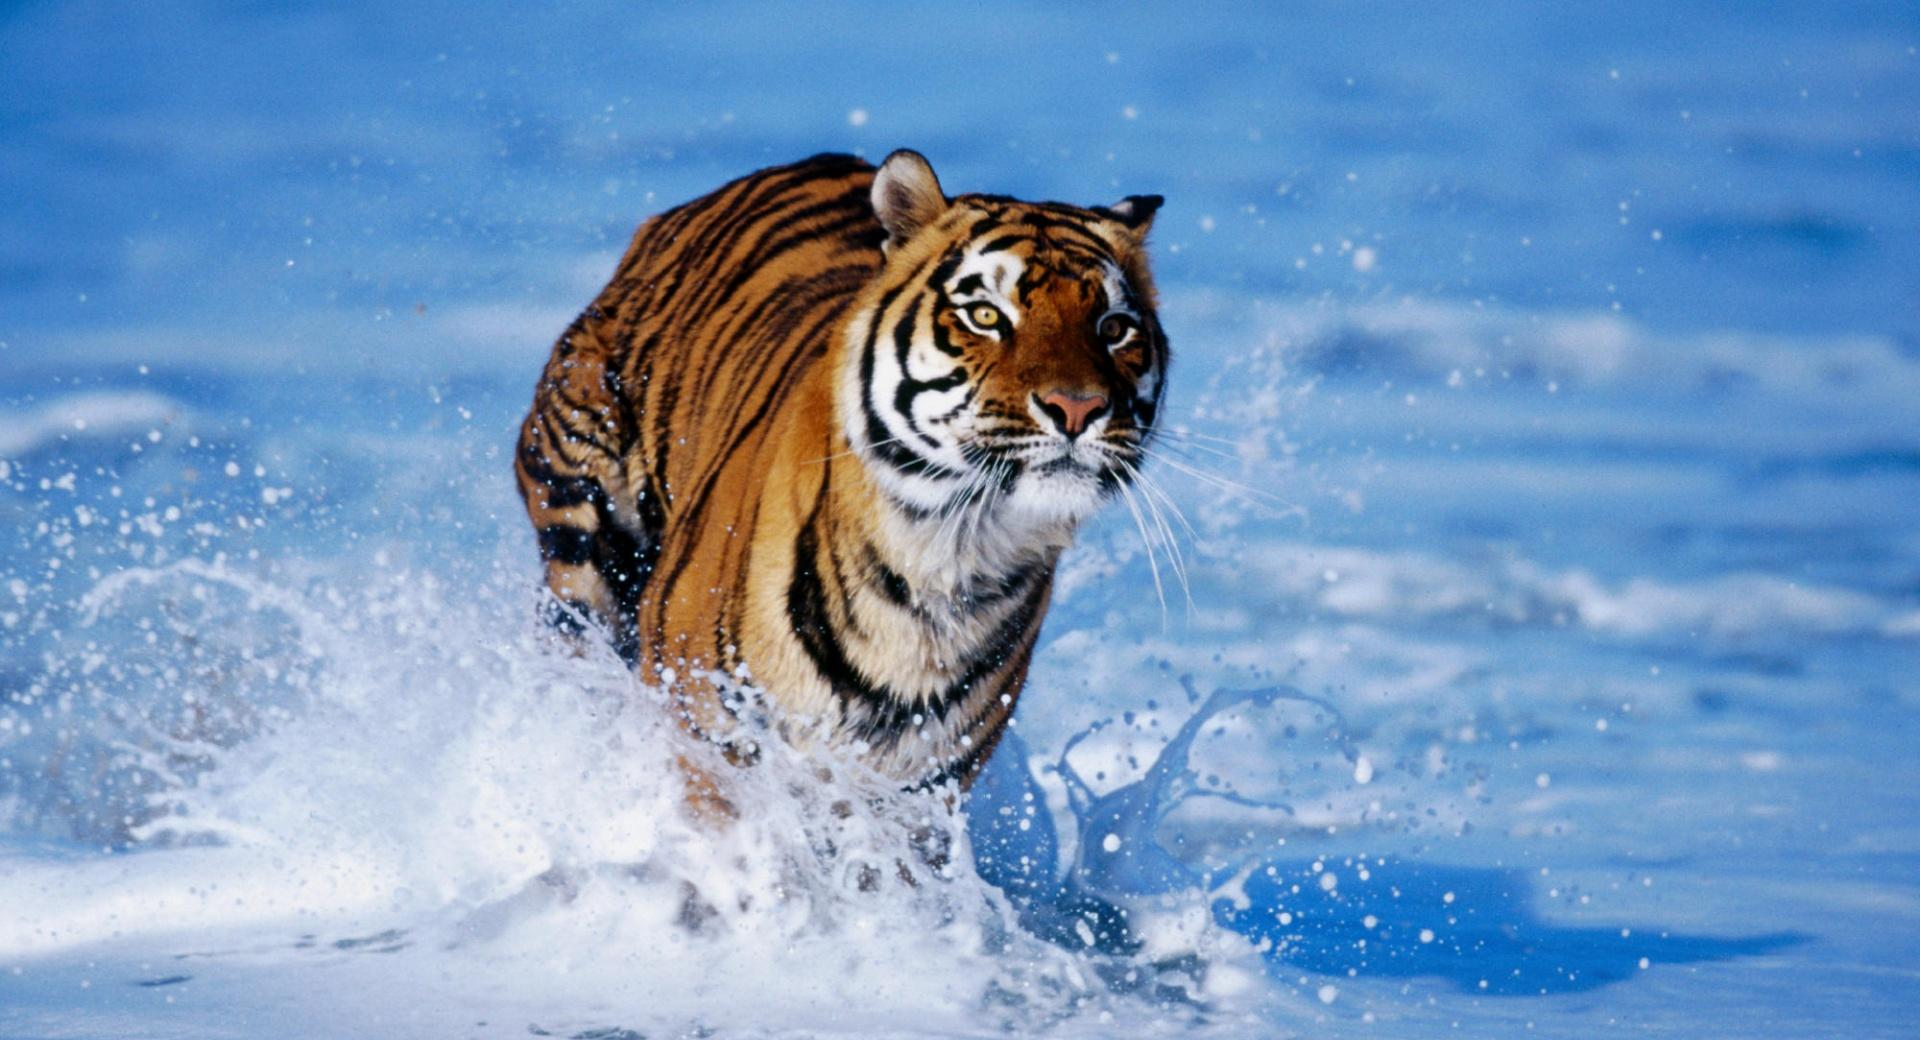 Bengal Tiger Panthera Tigris Tigris at 1280 x 960 size wallpapers HD quality